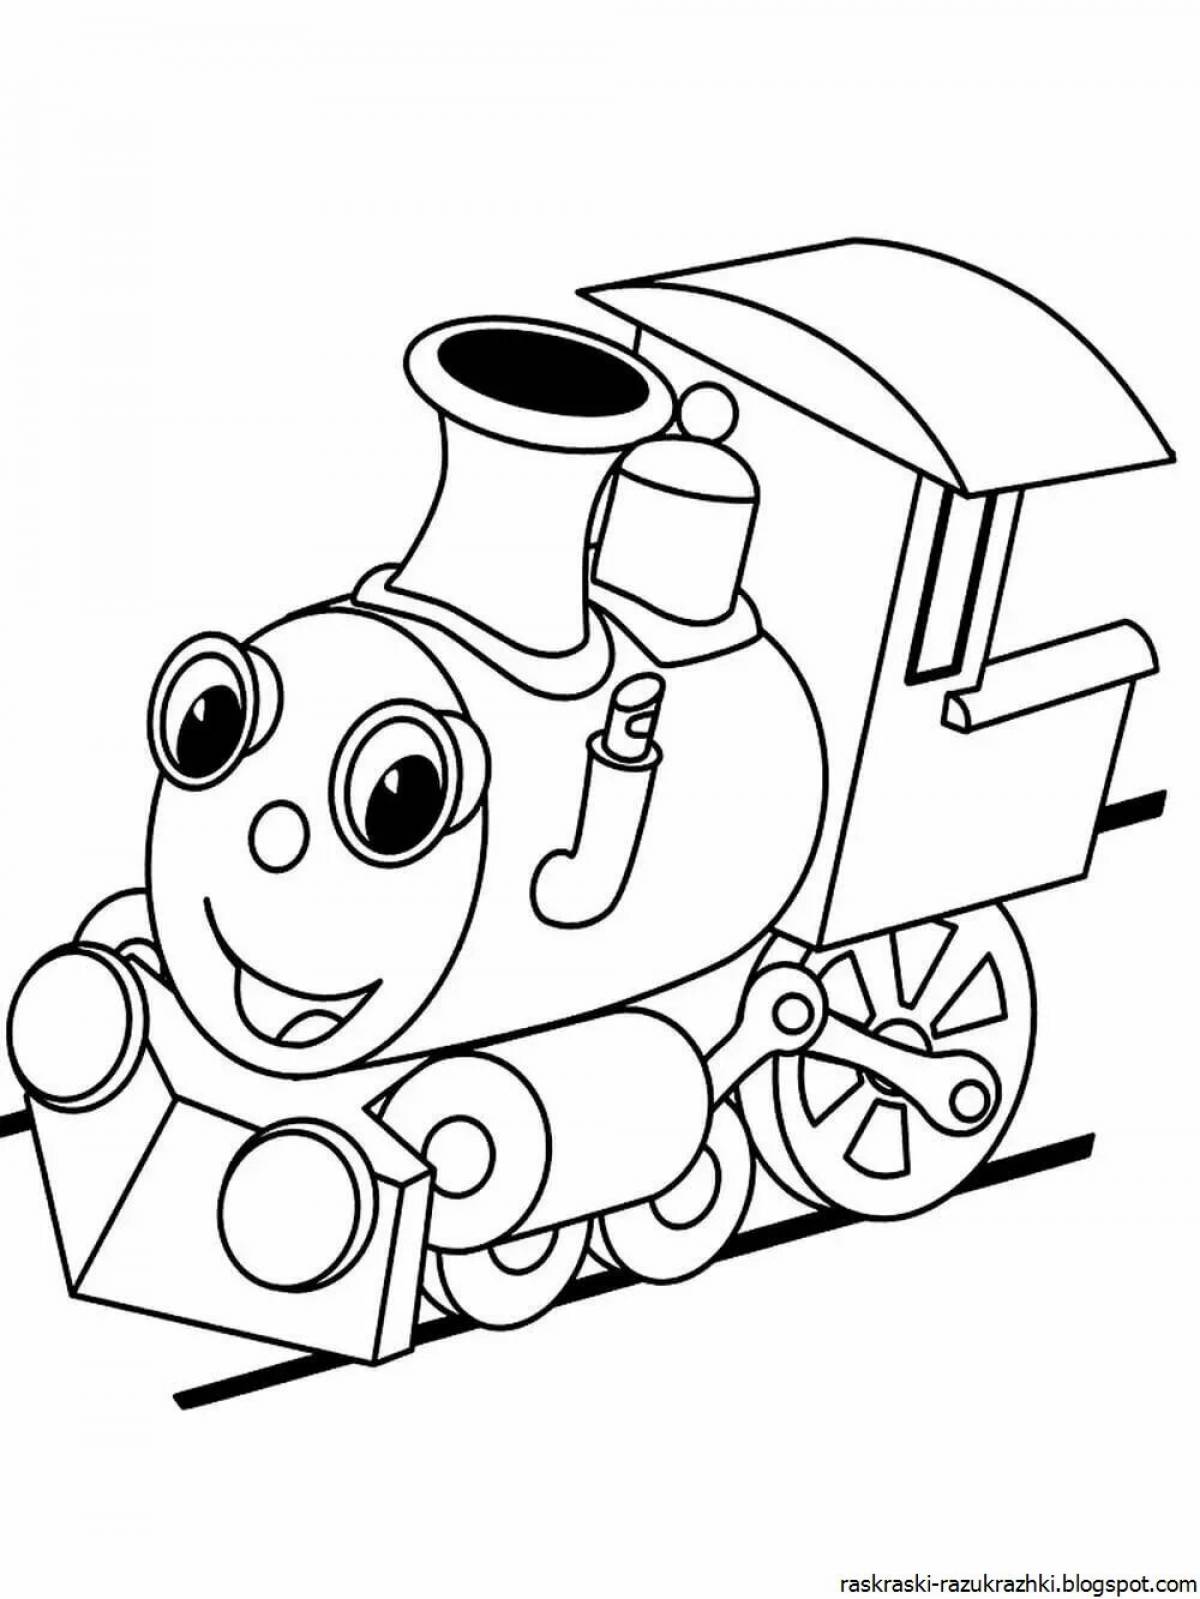 Блестящая раскраска поезда для дошкольников 2-3 лет